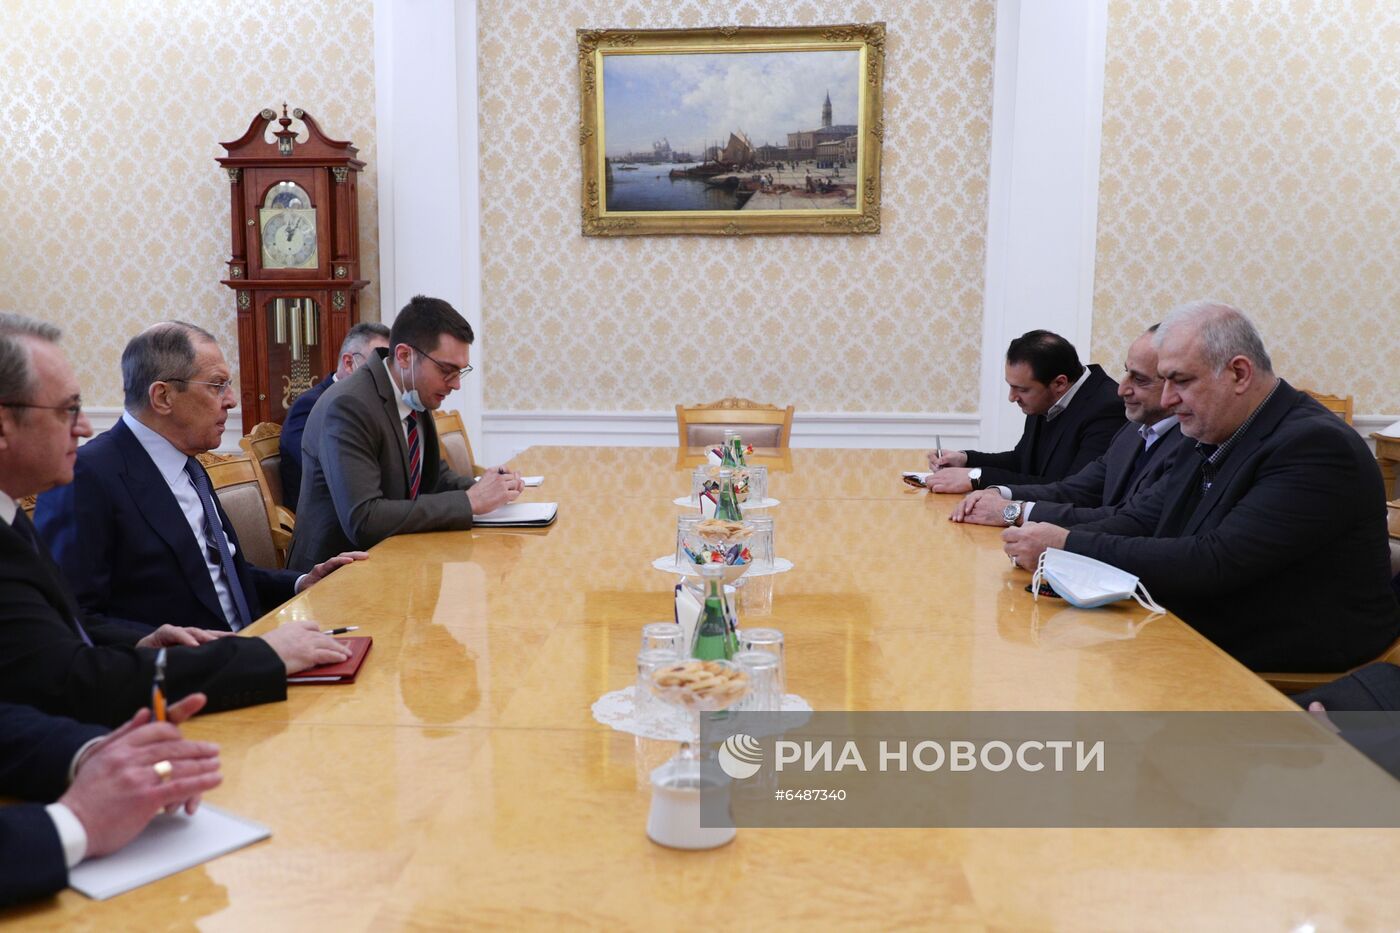 Встреча главы МИД РФ С. Лаврова с руководителем фракции движения Хизбаллы М. Раадом